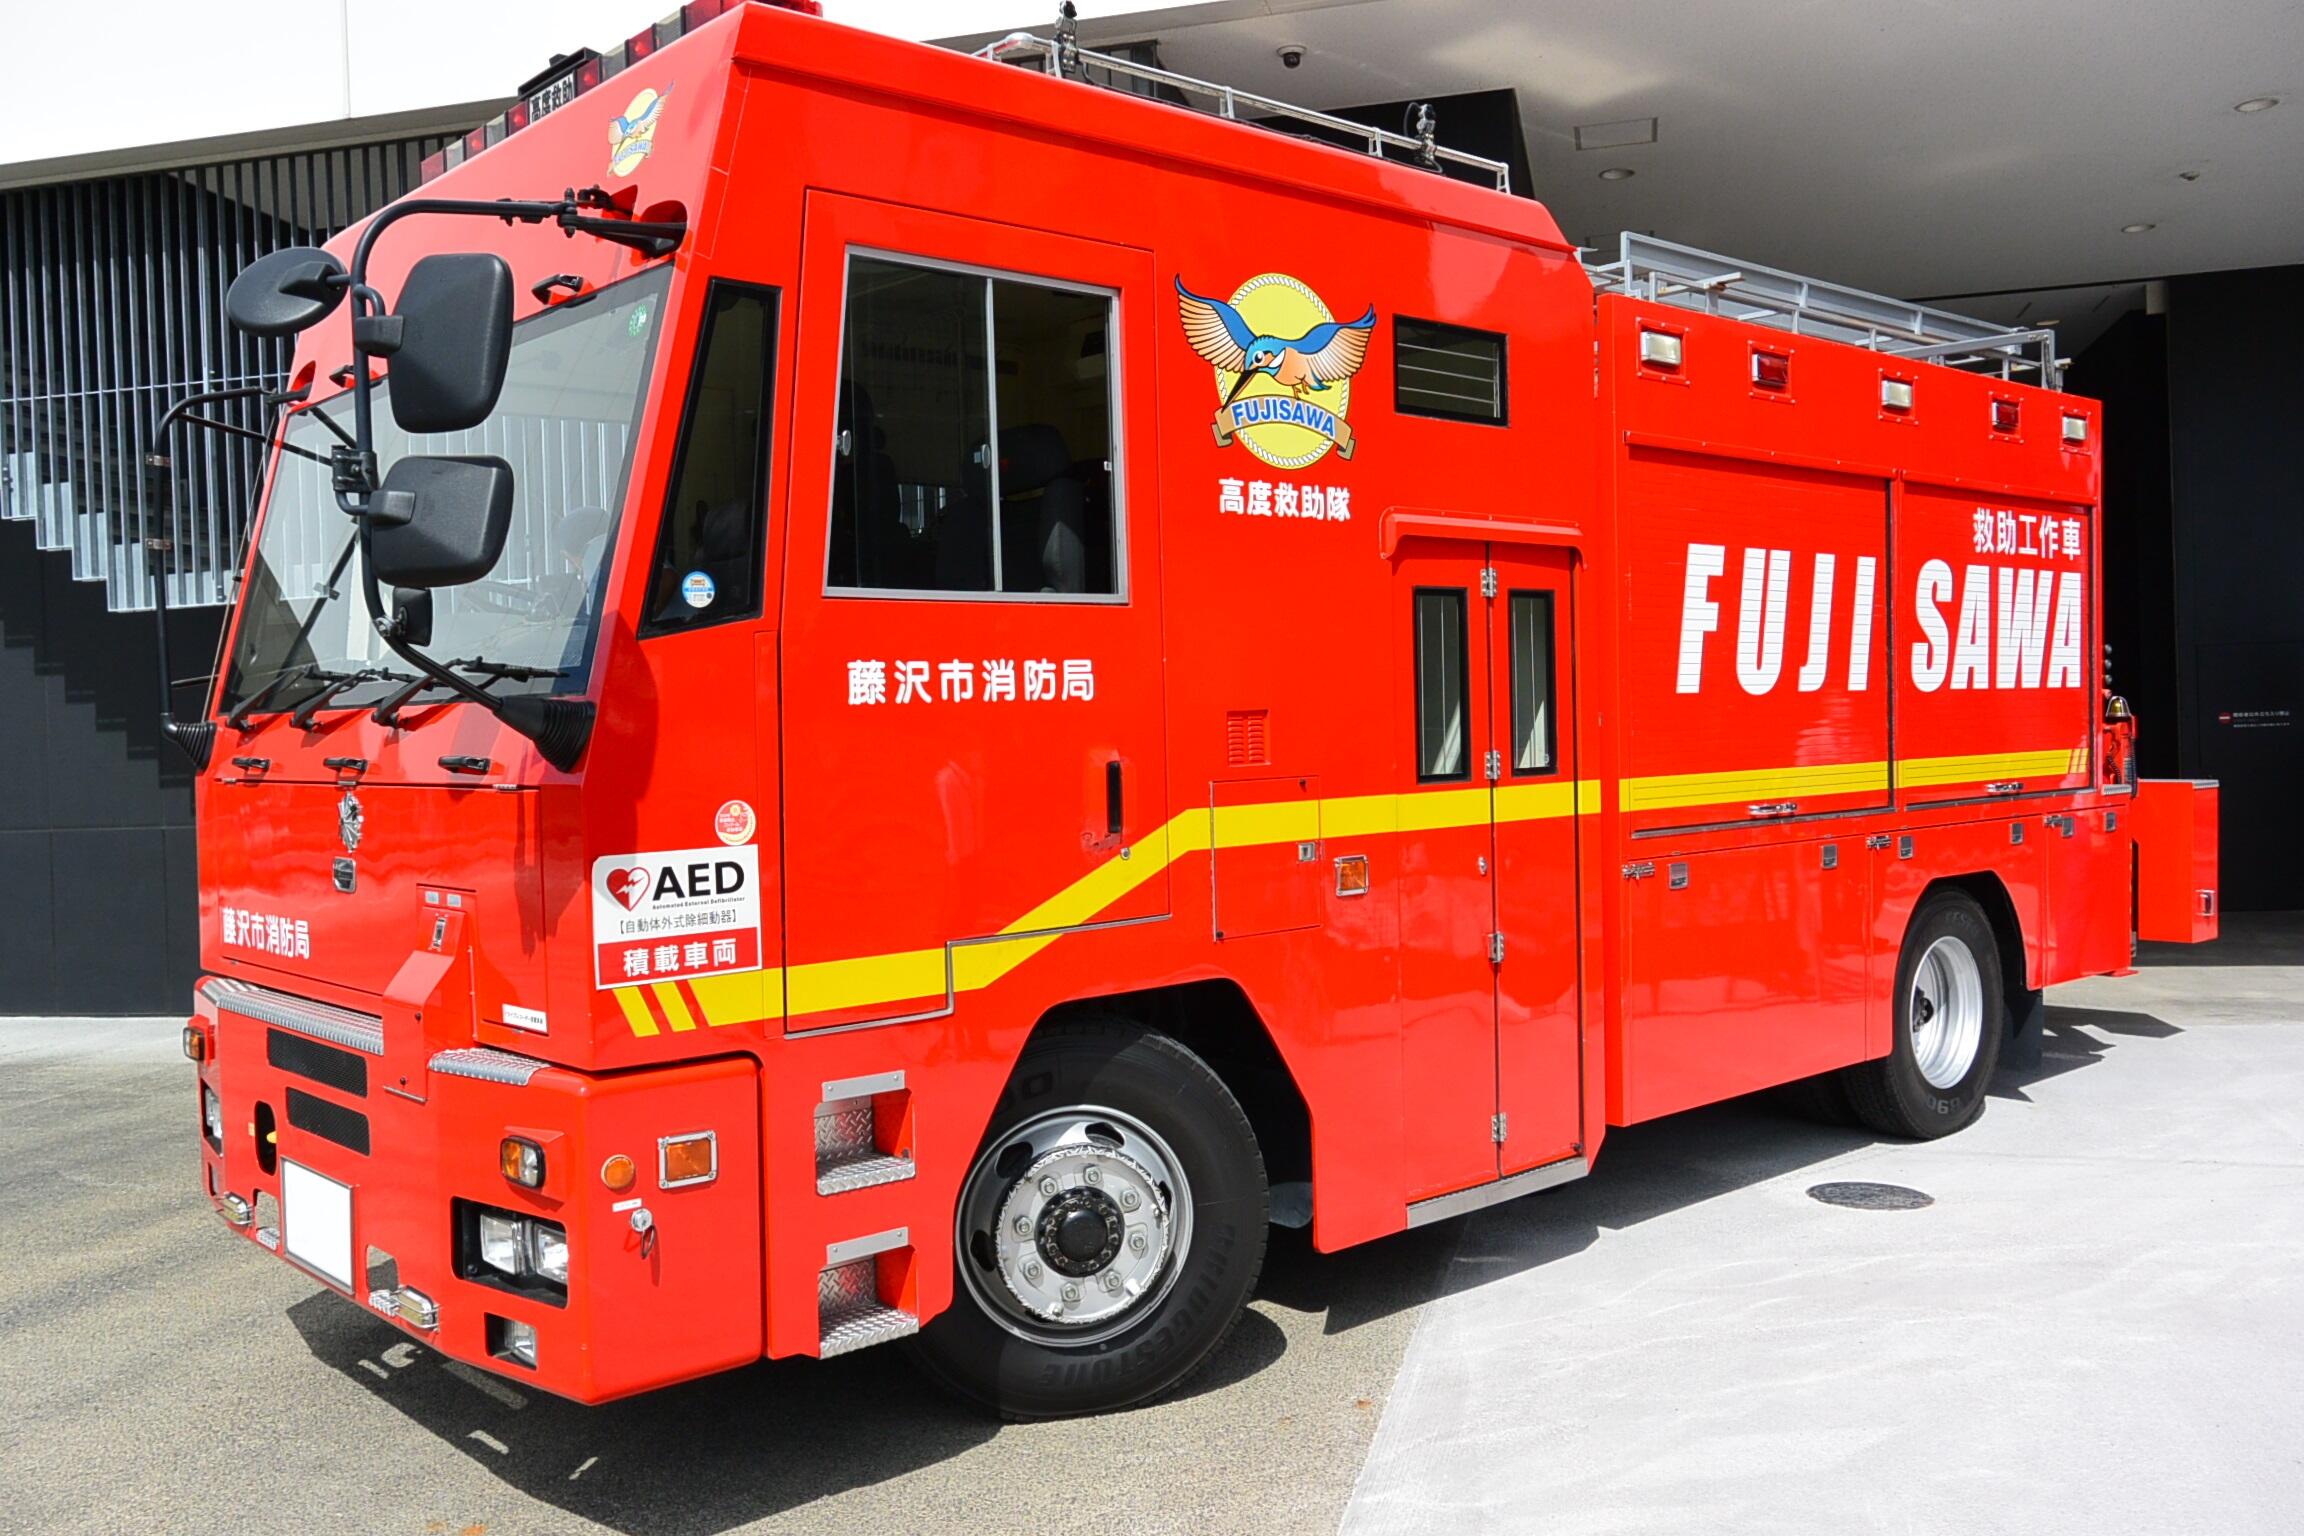 藤沢市消防局にて運用を終えた救助工作車